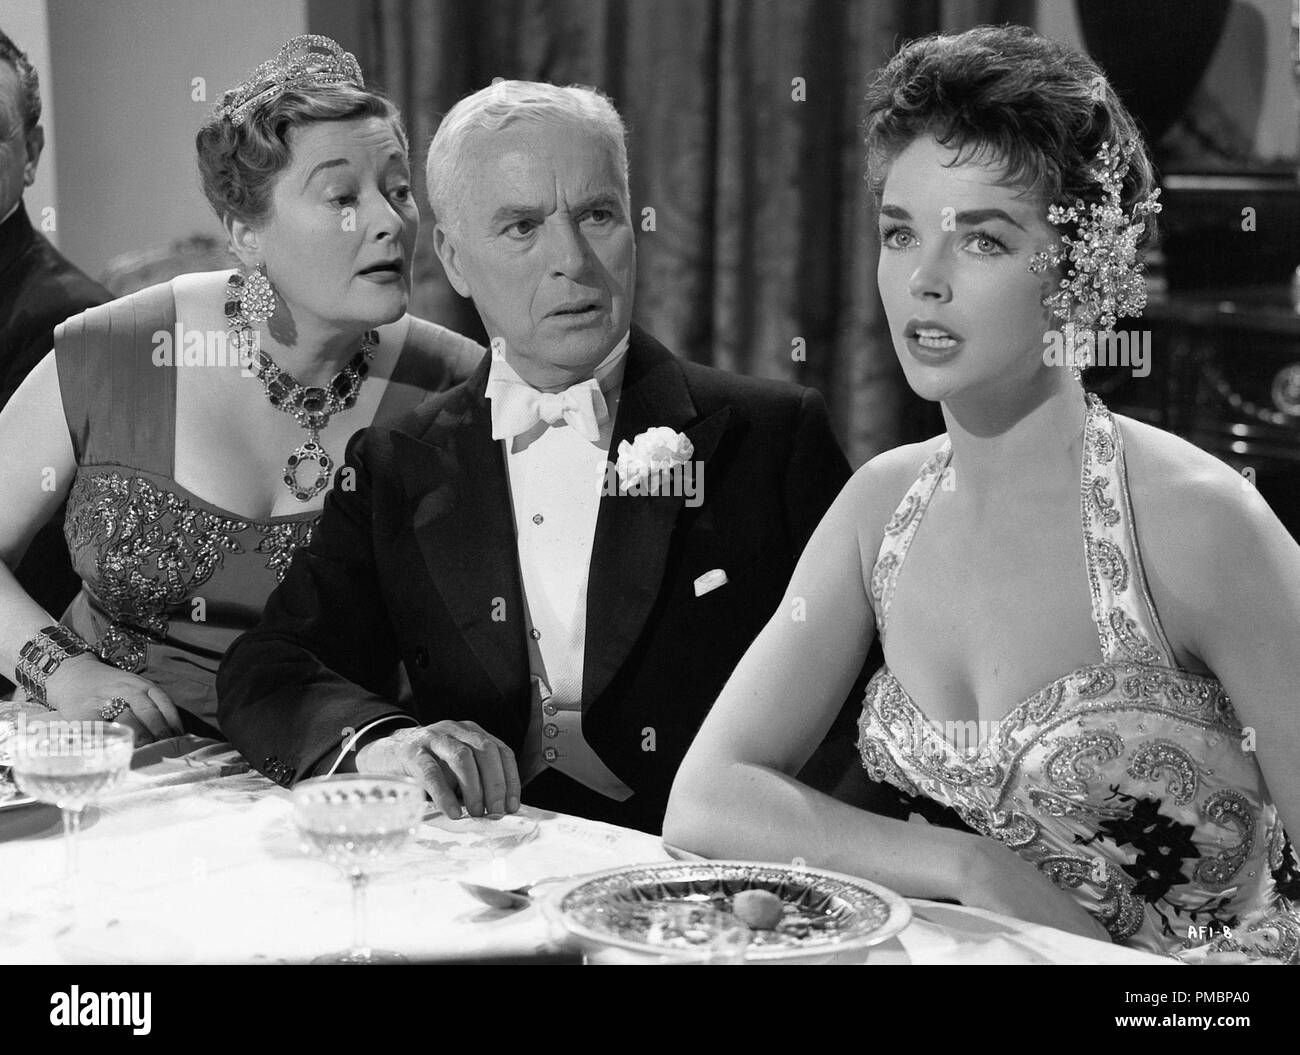 Charles Chaplin en 'Un Rey en Nueva York' Arco 1957 Ent. Archivo de referencia # 32603 349tha Foto de stock